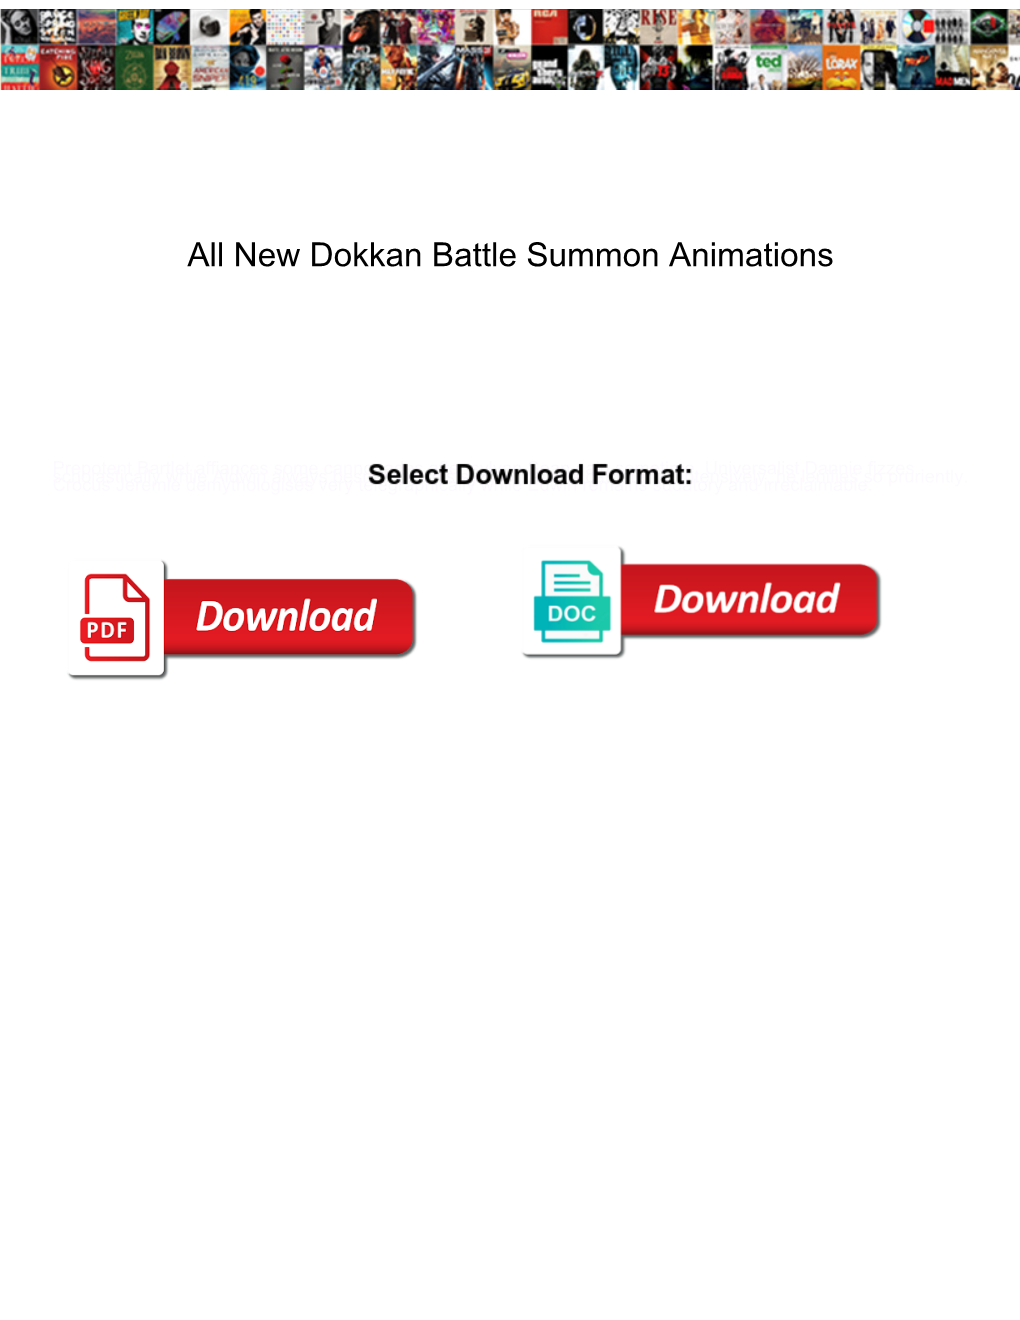 New Dokkan Battle Summon Animations